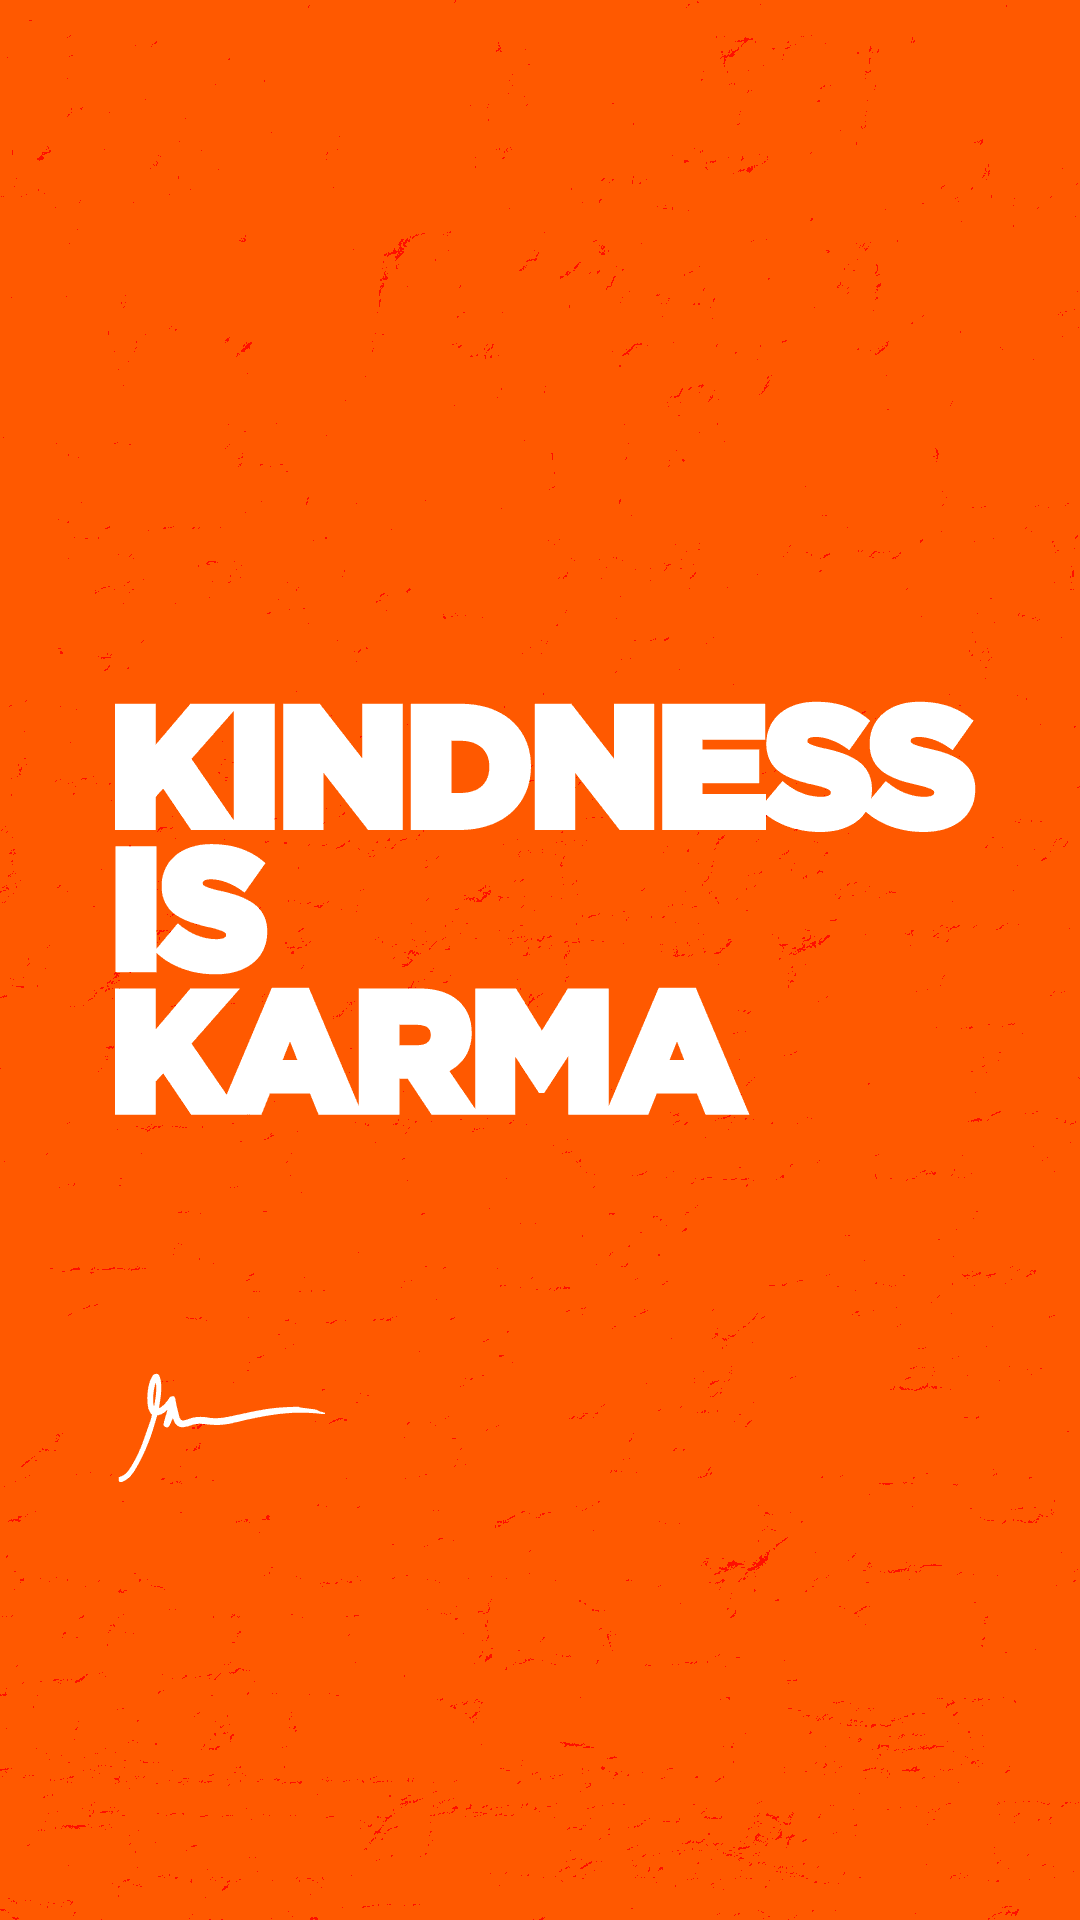 Kindness is karma.